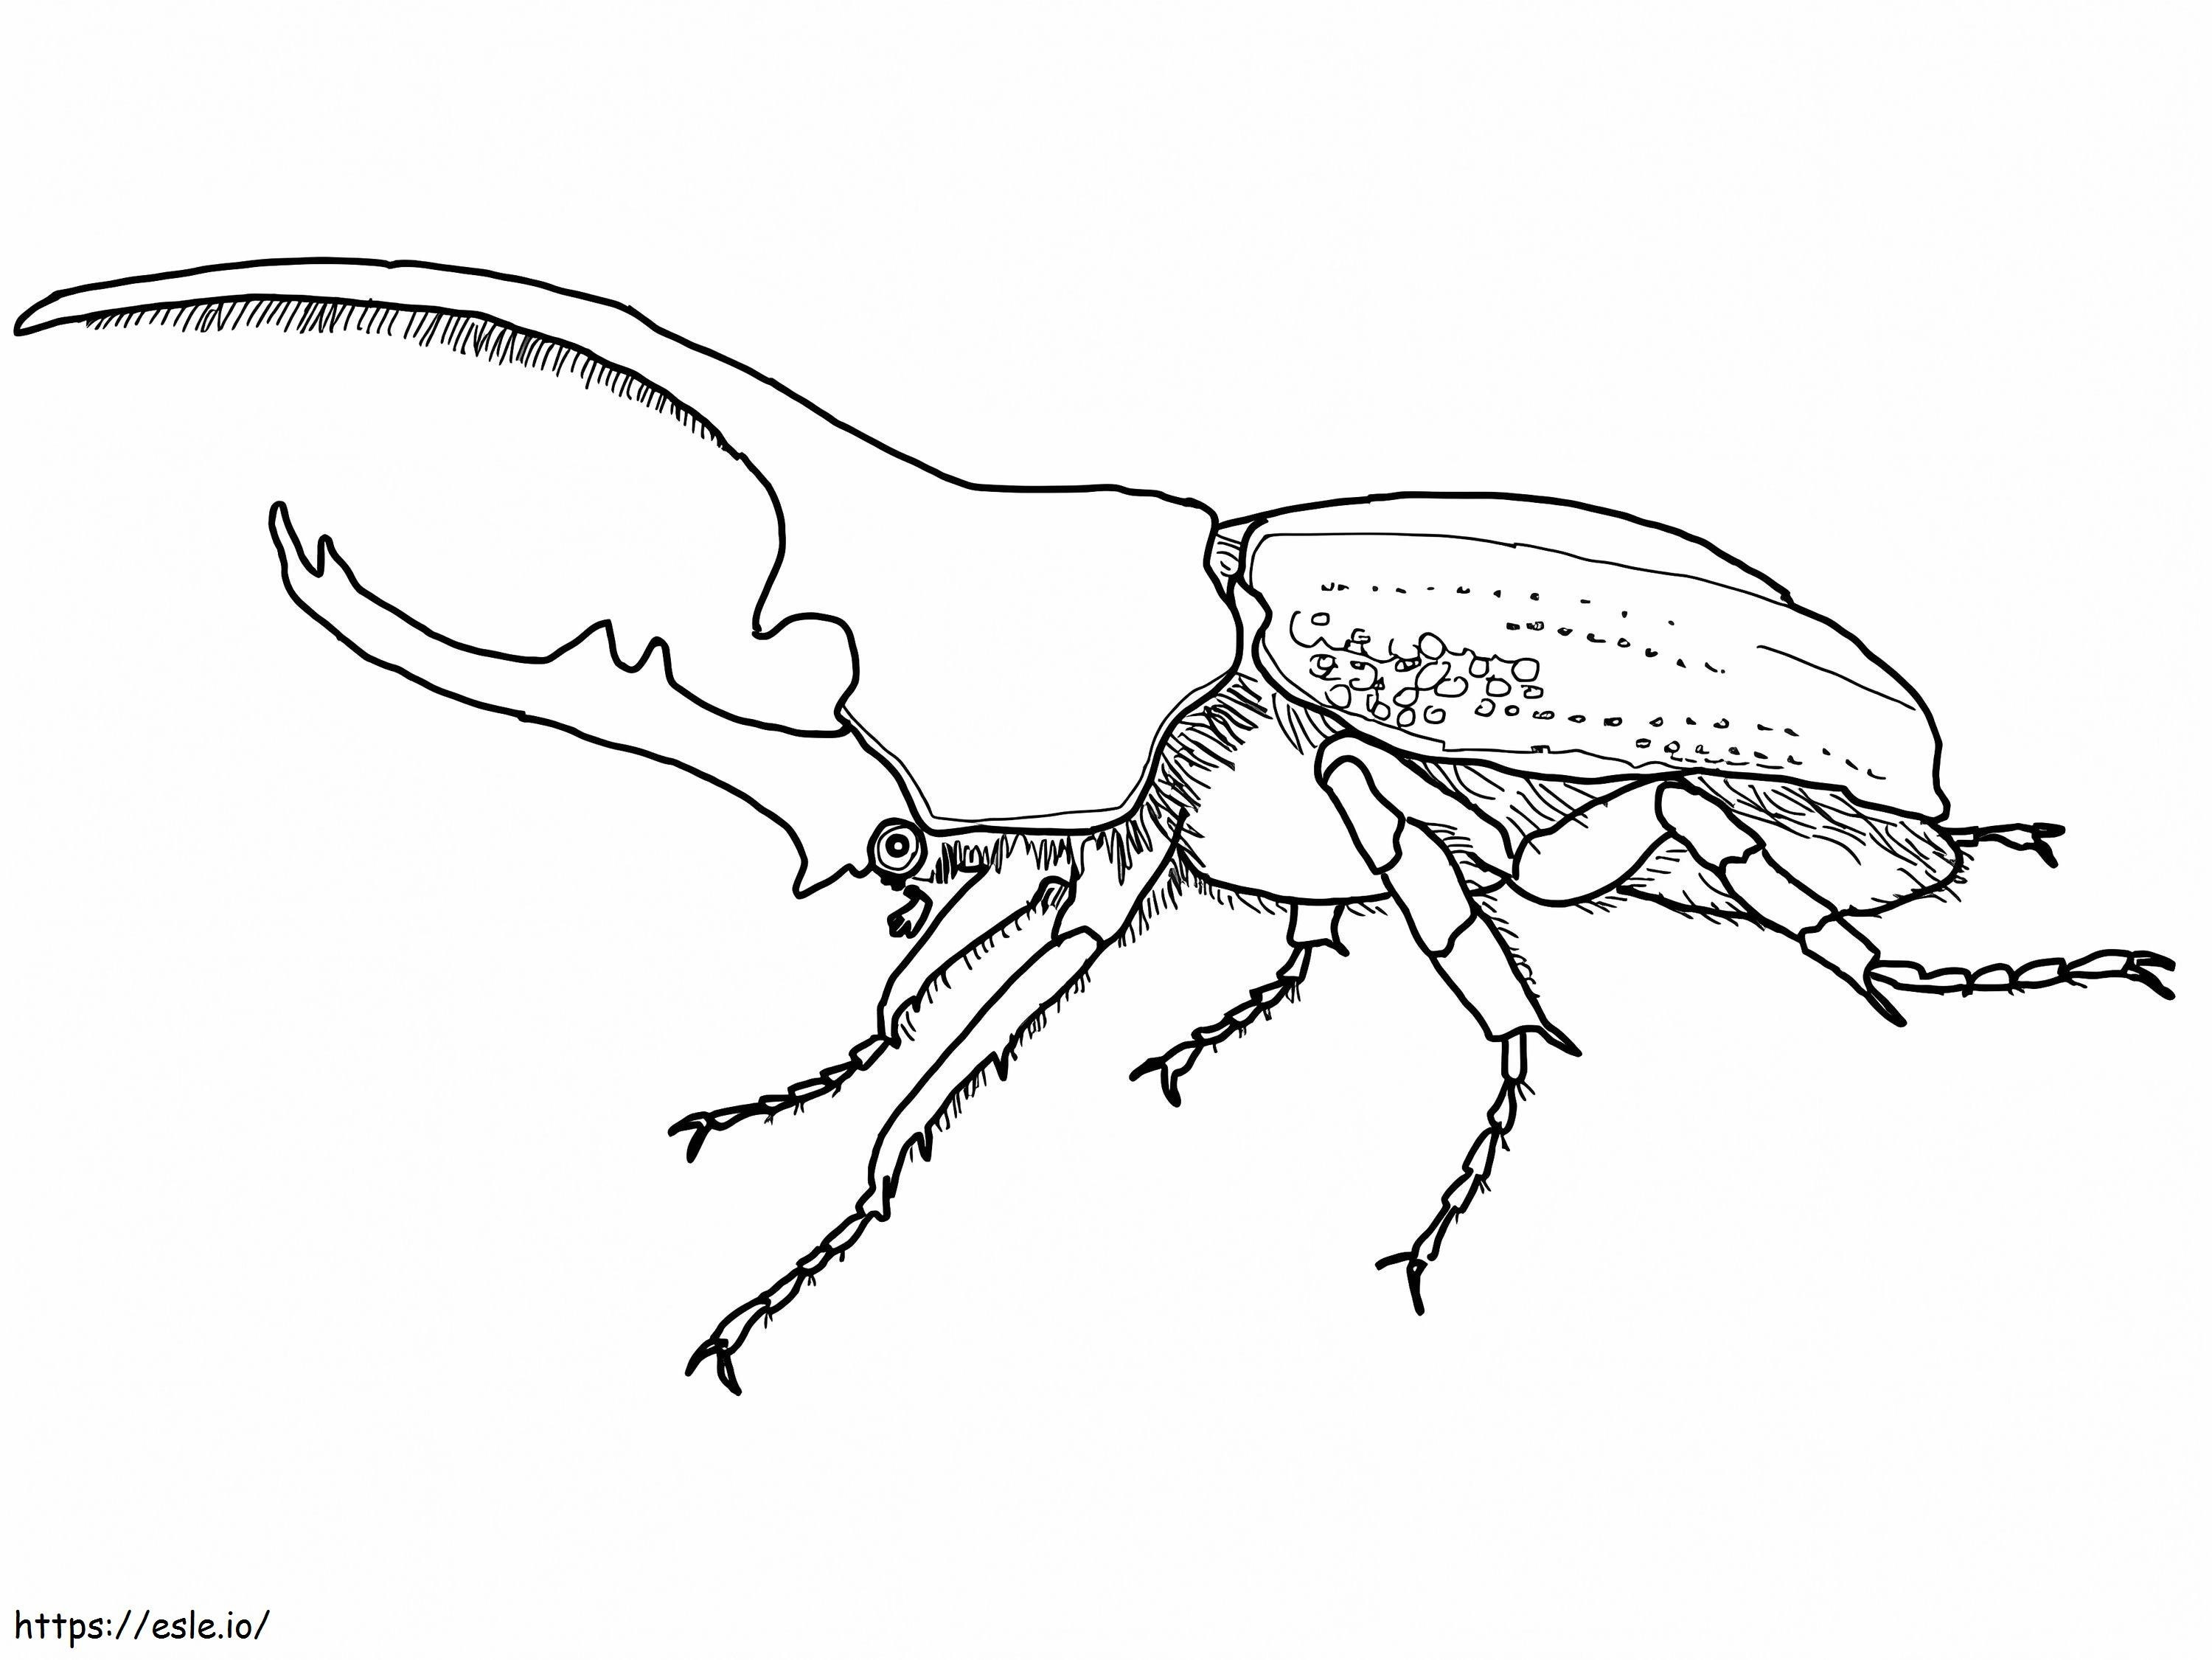 Hercules Beetle coloring page